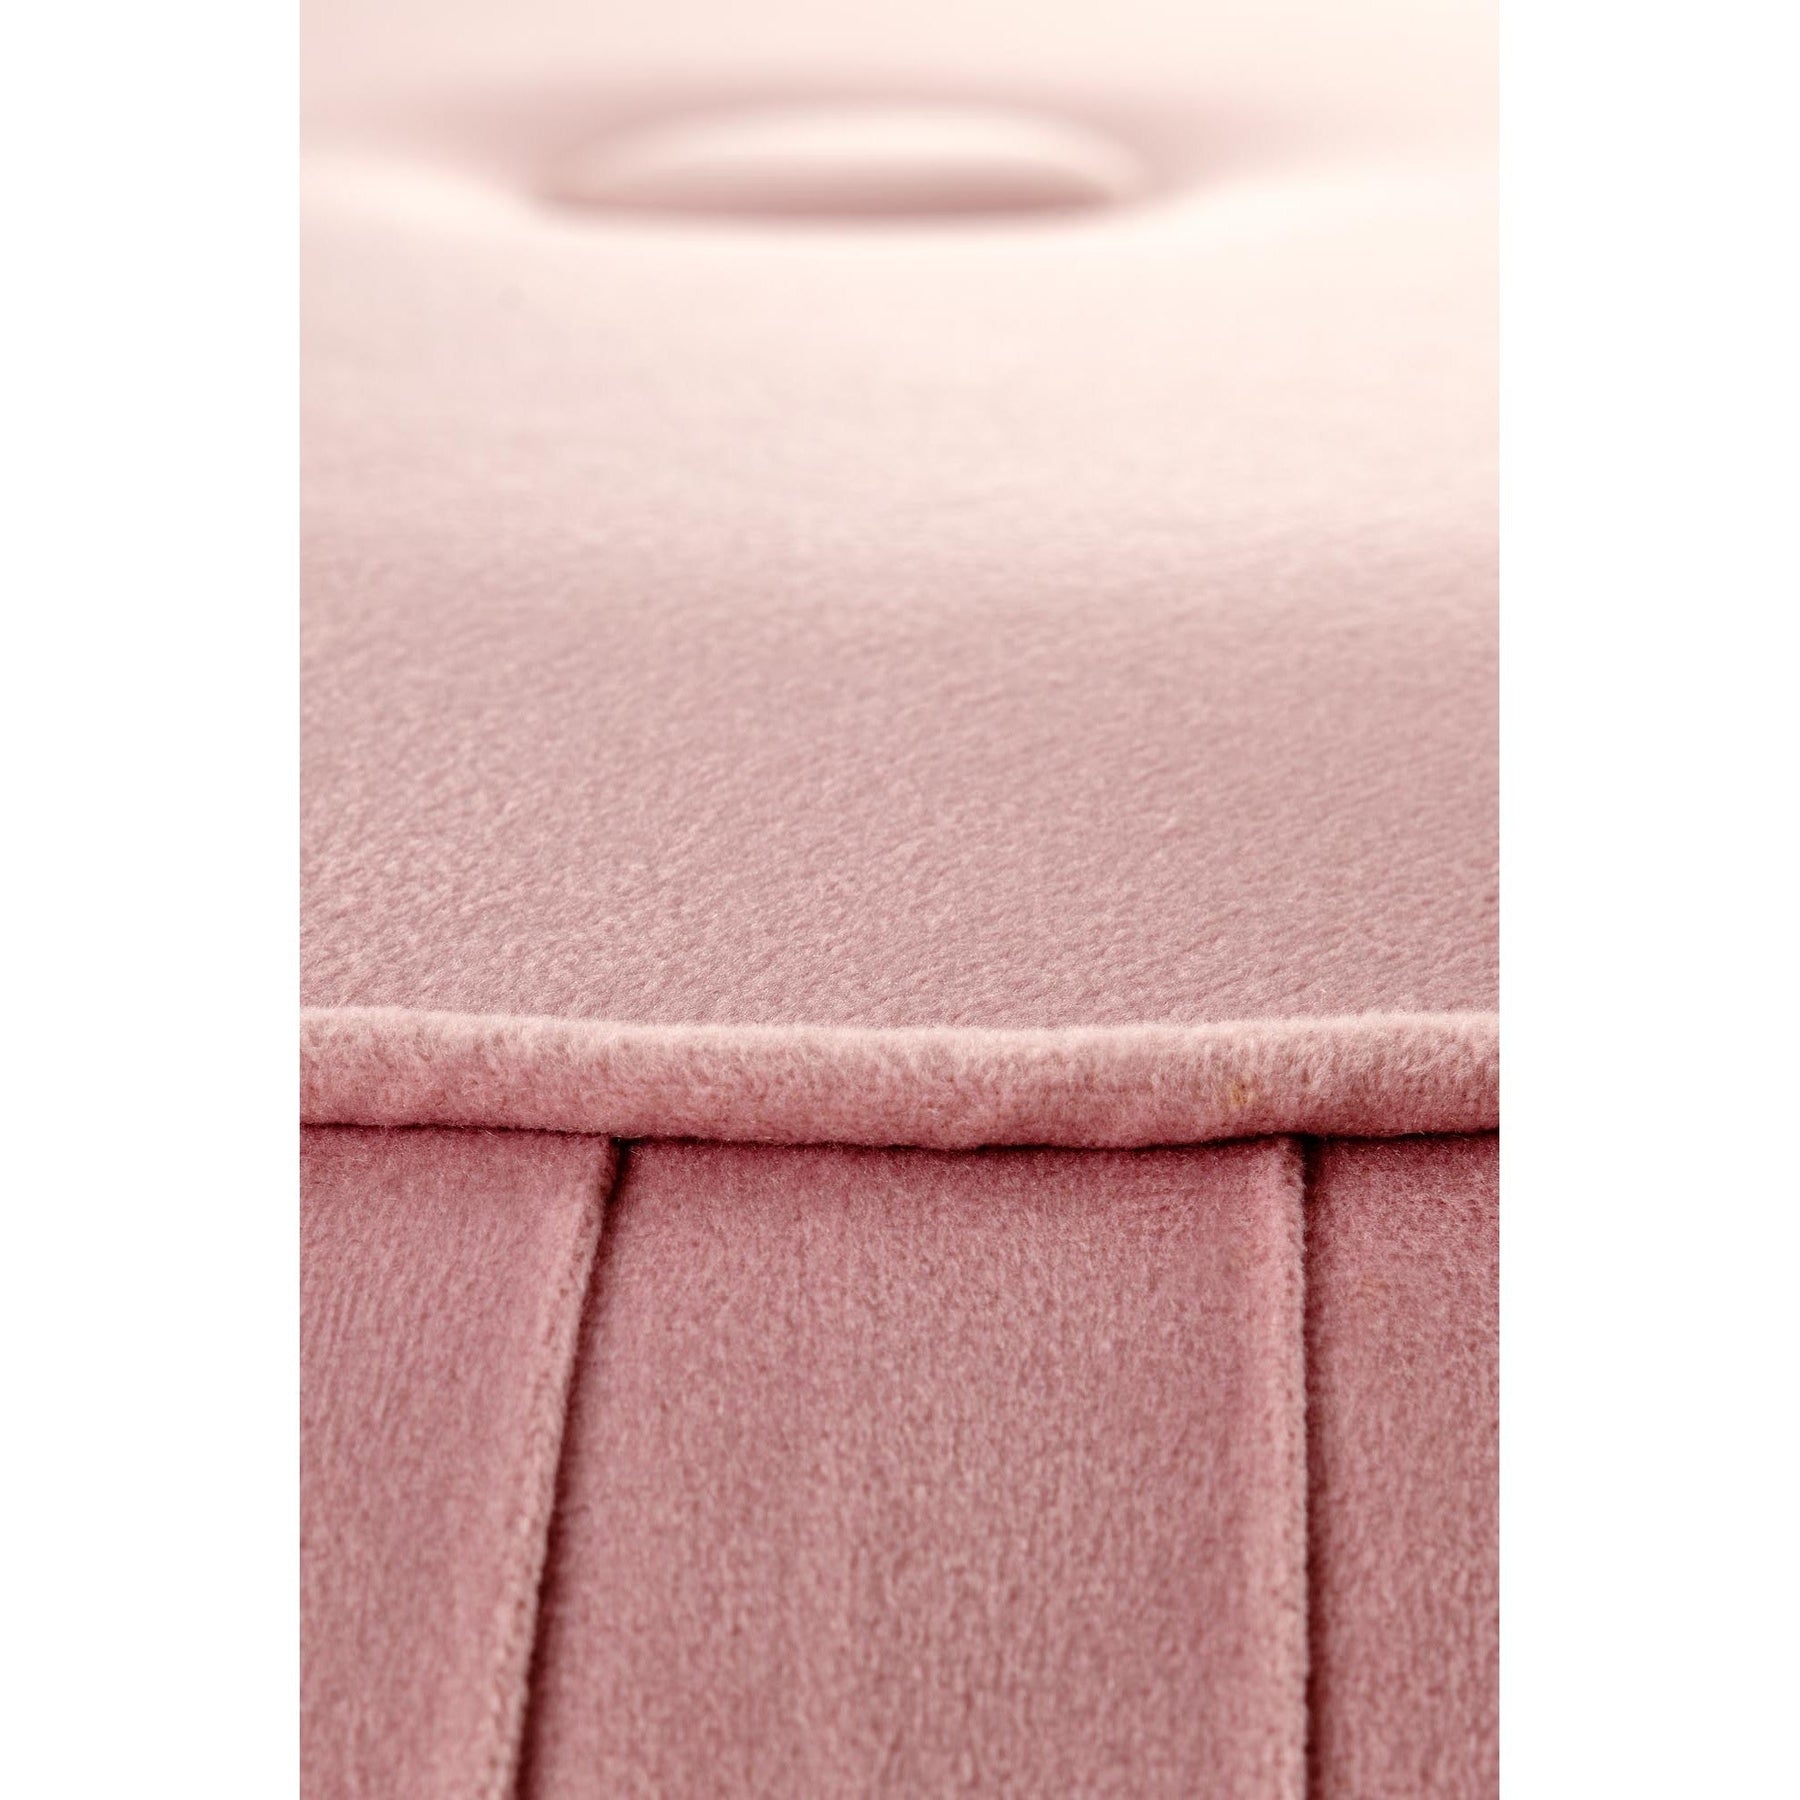 Taburet ALADIN,  stofa - catifelata roz  / otel inoxidabil, 43x44 cm